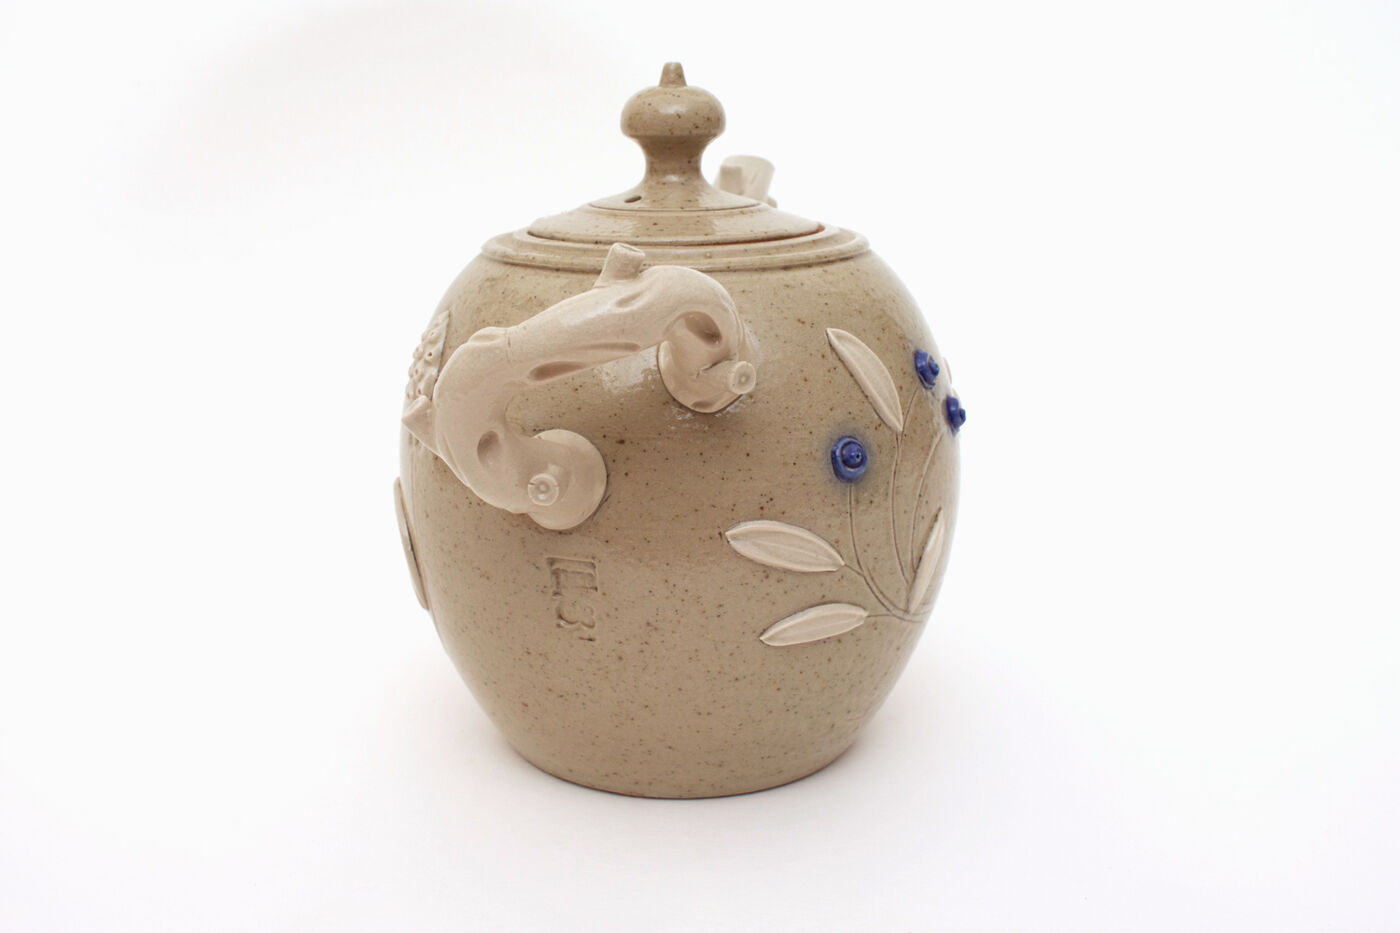 Peter Meanley Ceramic Teapot 18